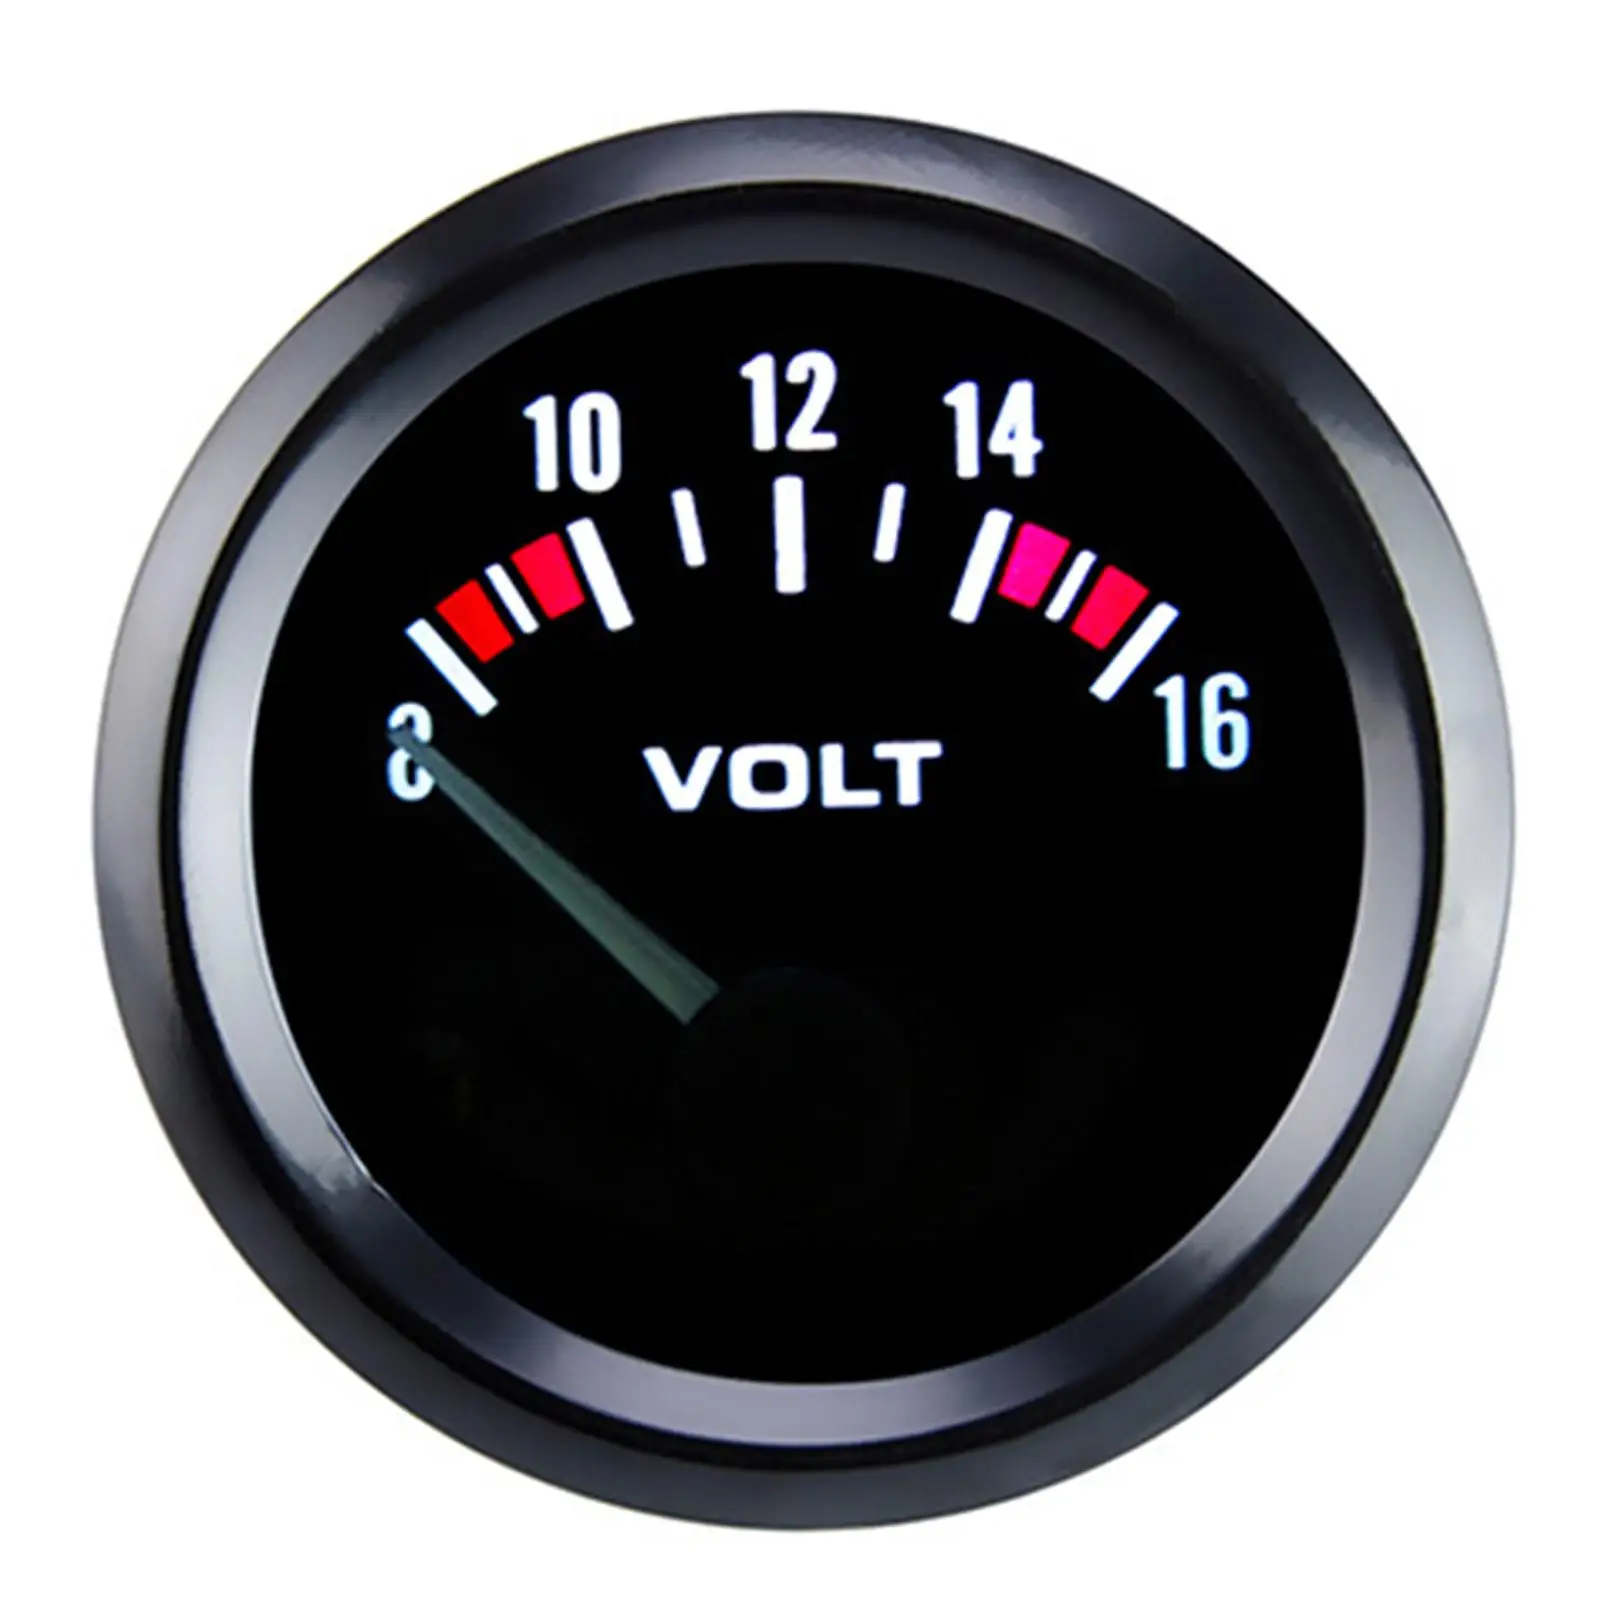 Car Voltmeter Auto Parts Volt Meter Gauges for Bicycle Auto Vehicle